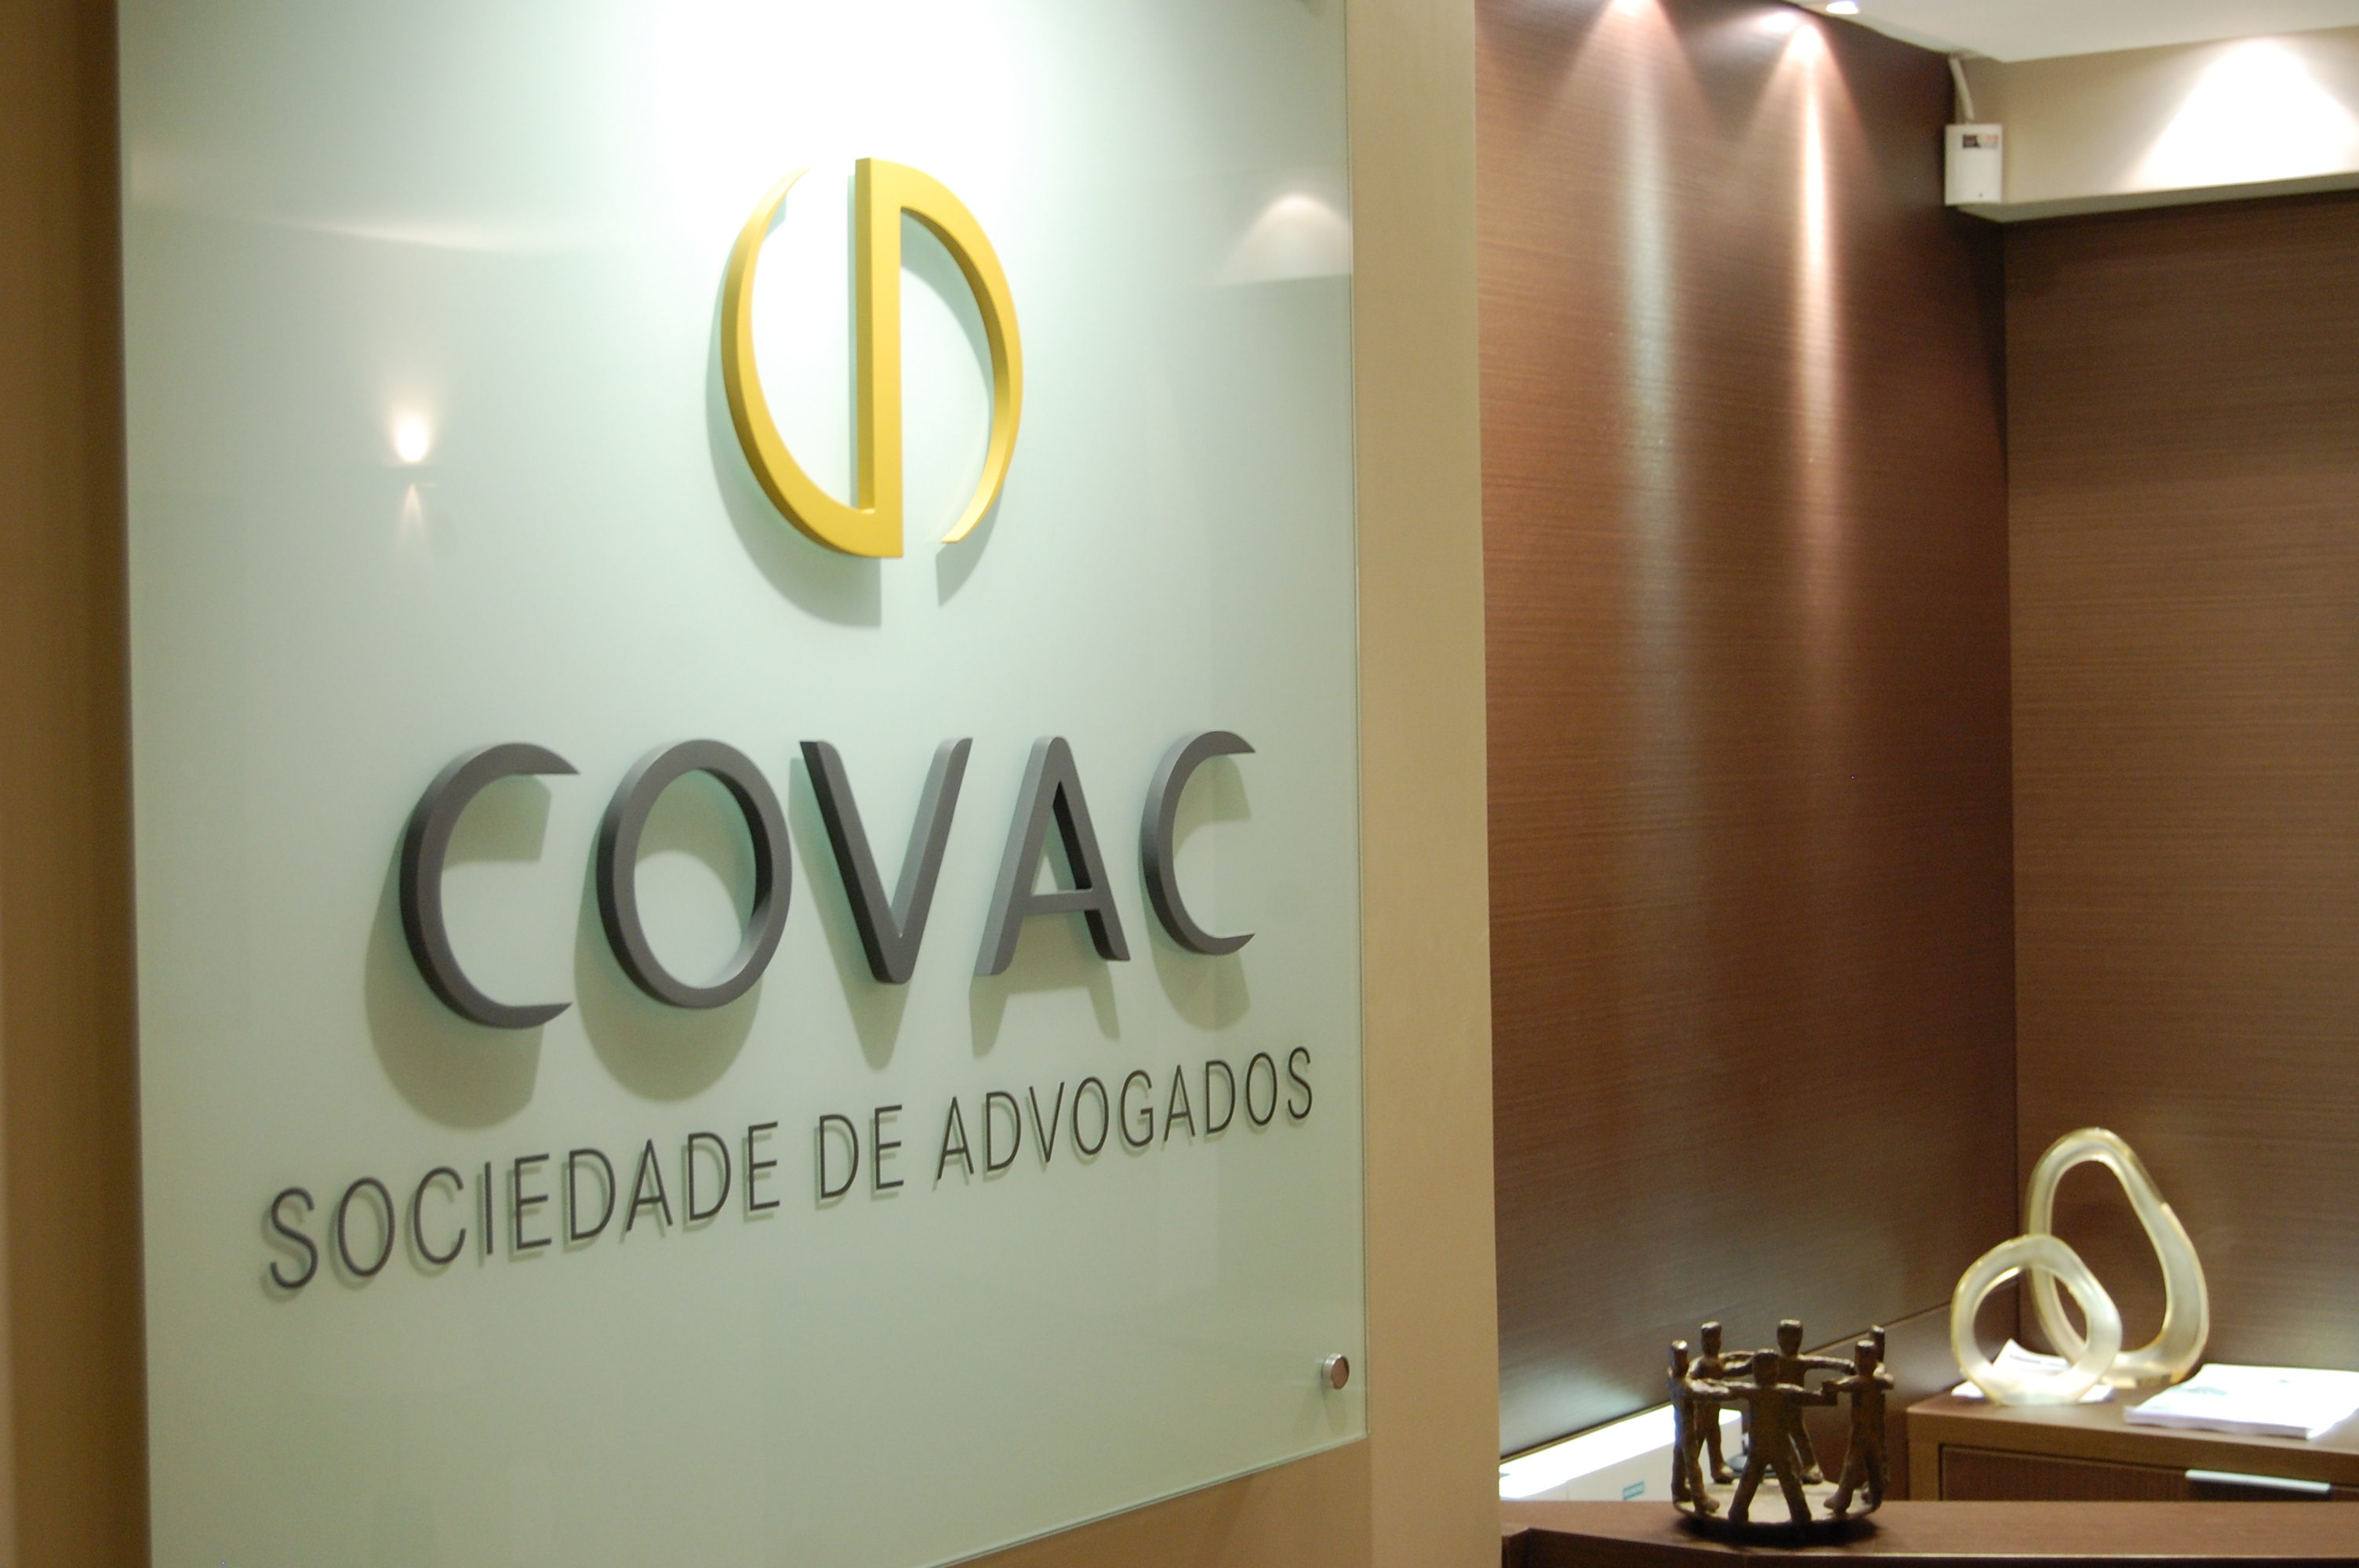 Covac é um dos mais admirados escritórios de advocacia do país